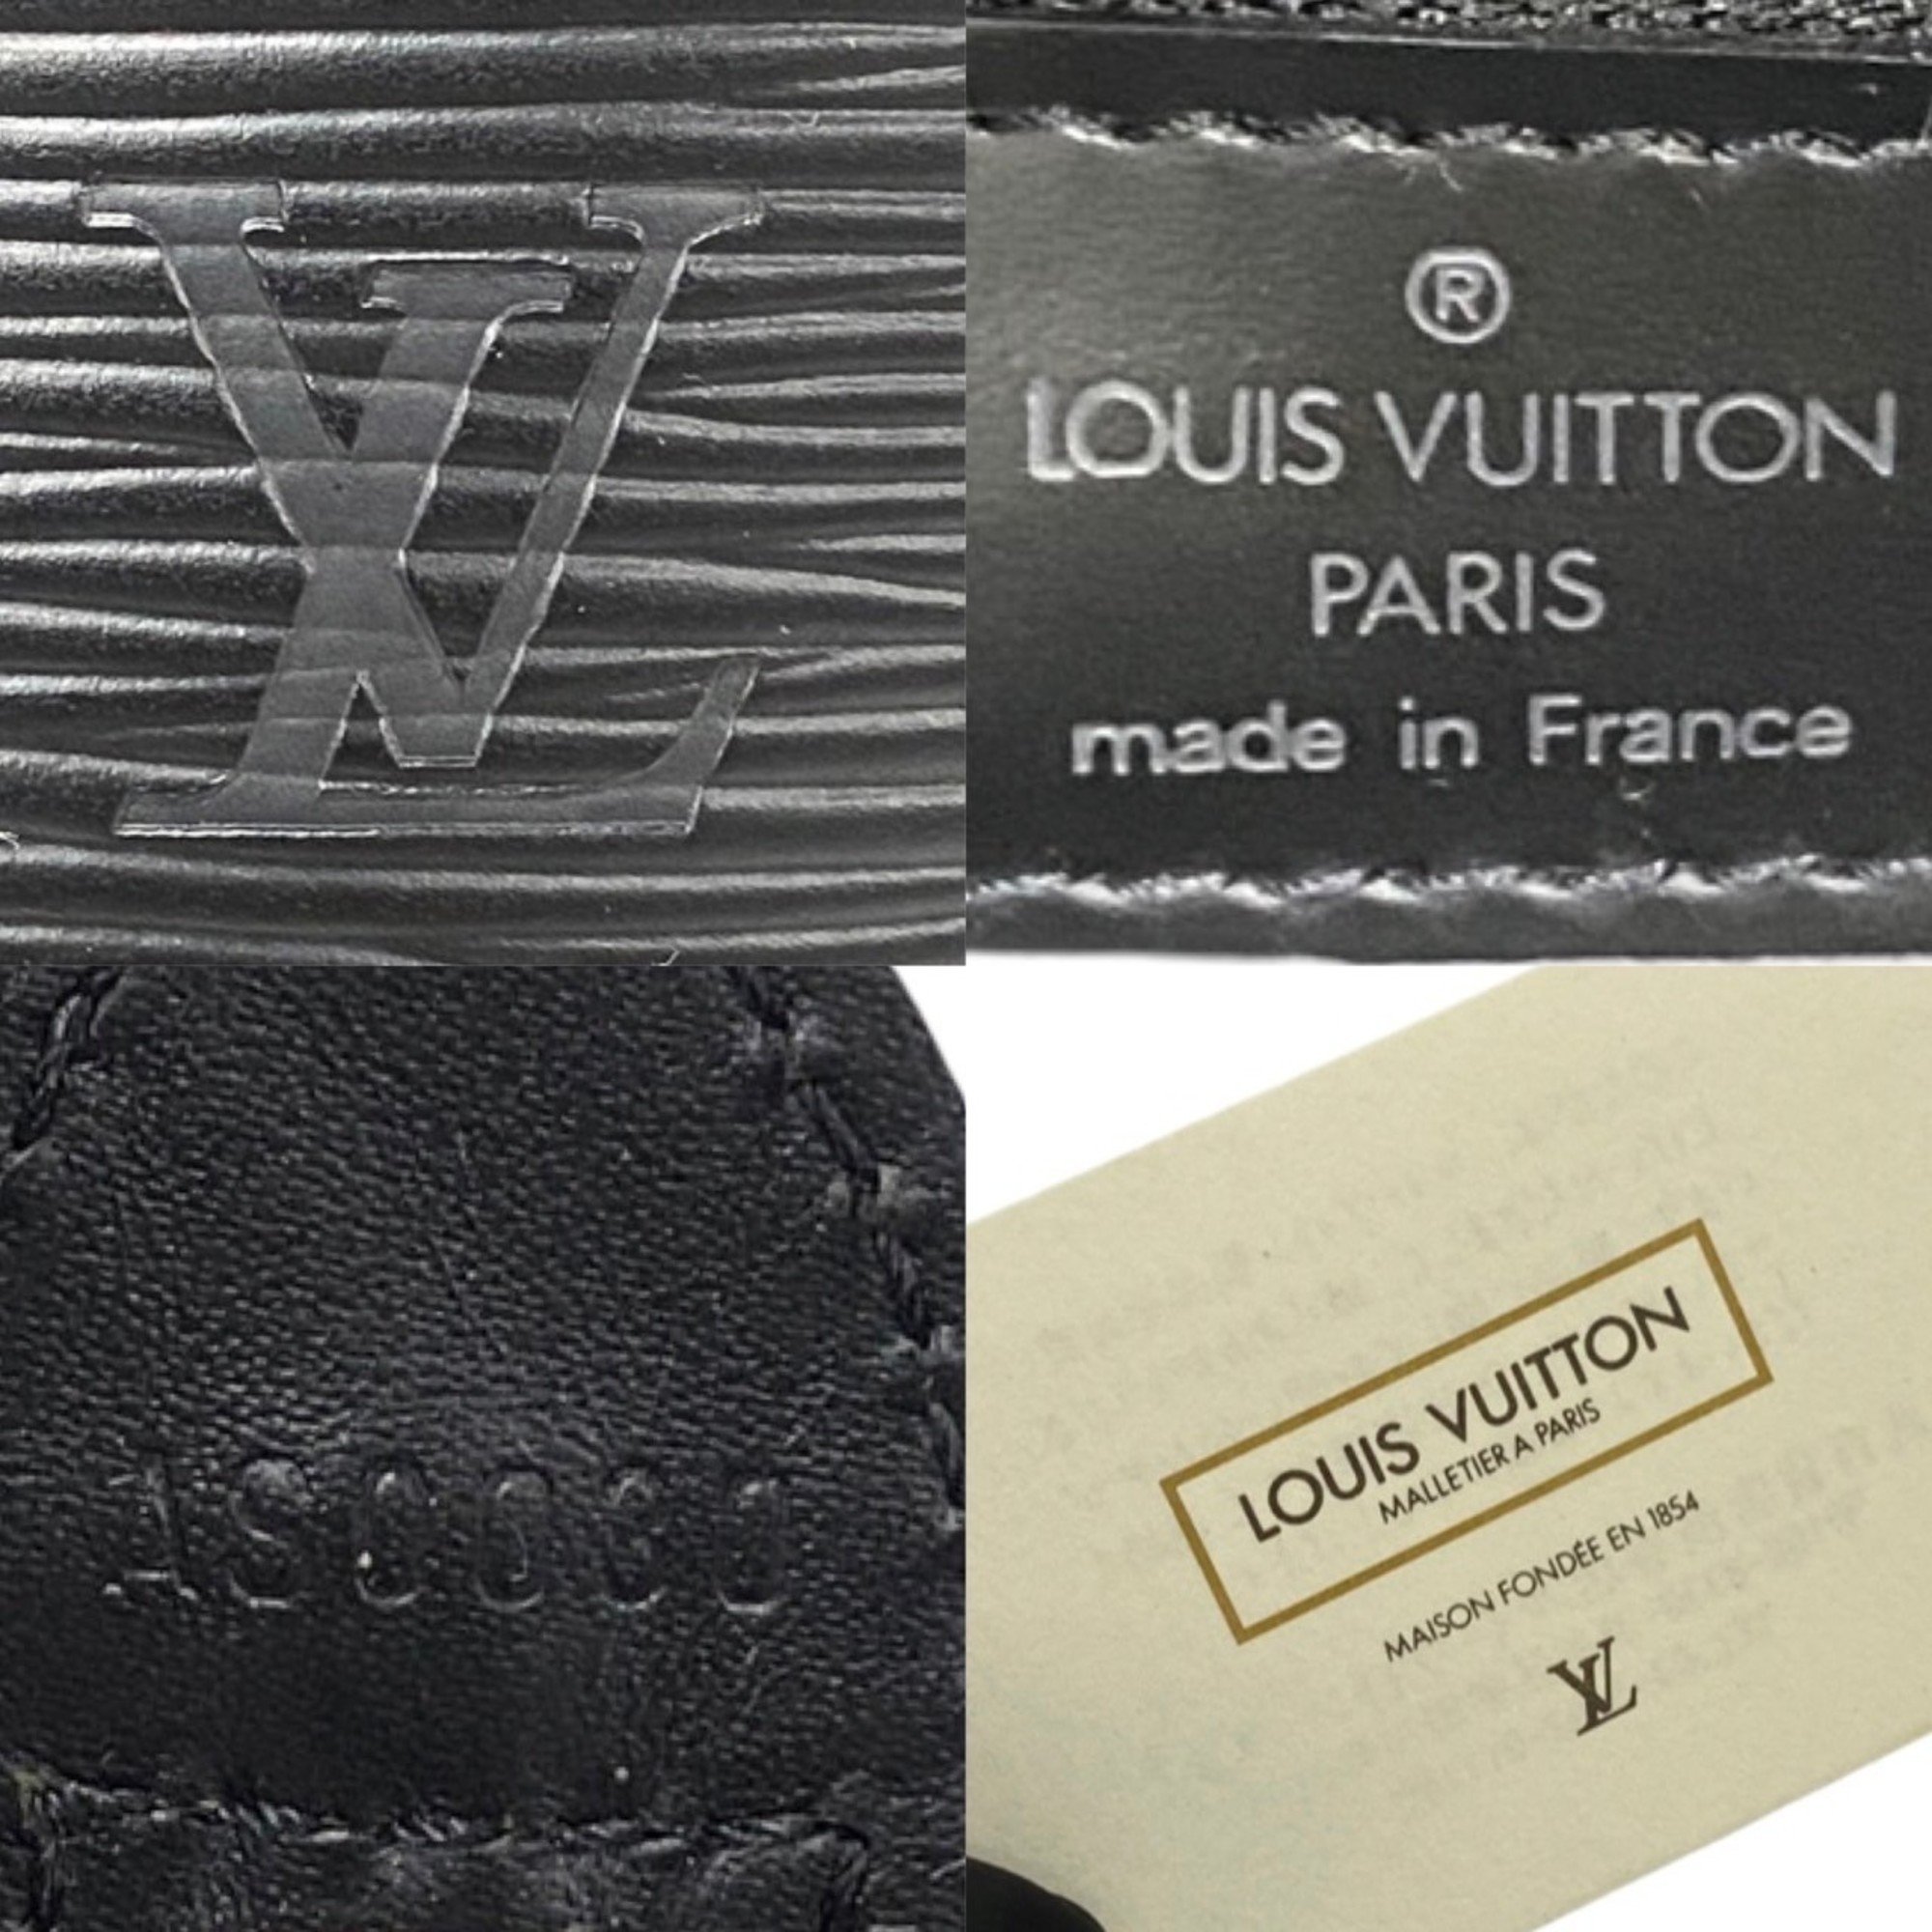 LOUIS VUITTON Saint Jacques Epi Leather Handbag Tote Bag Noir Black 38527